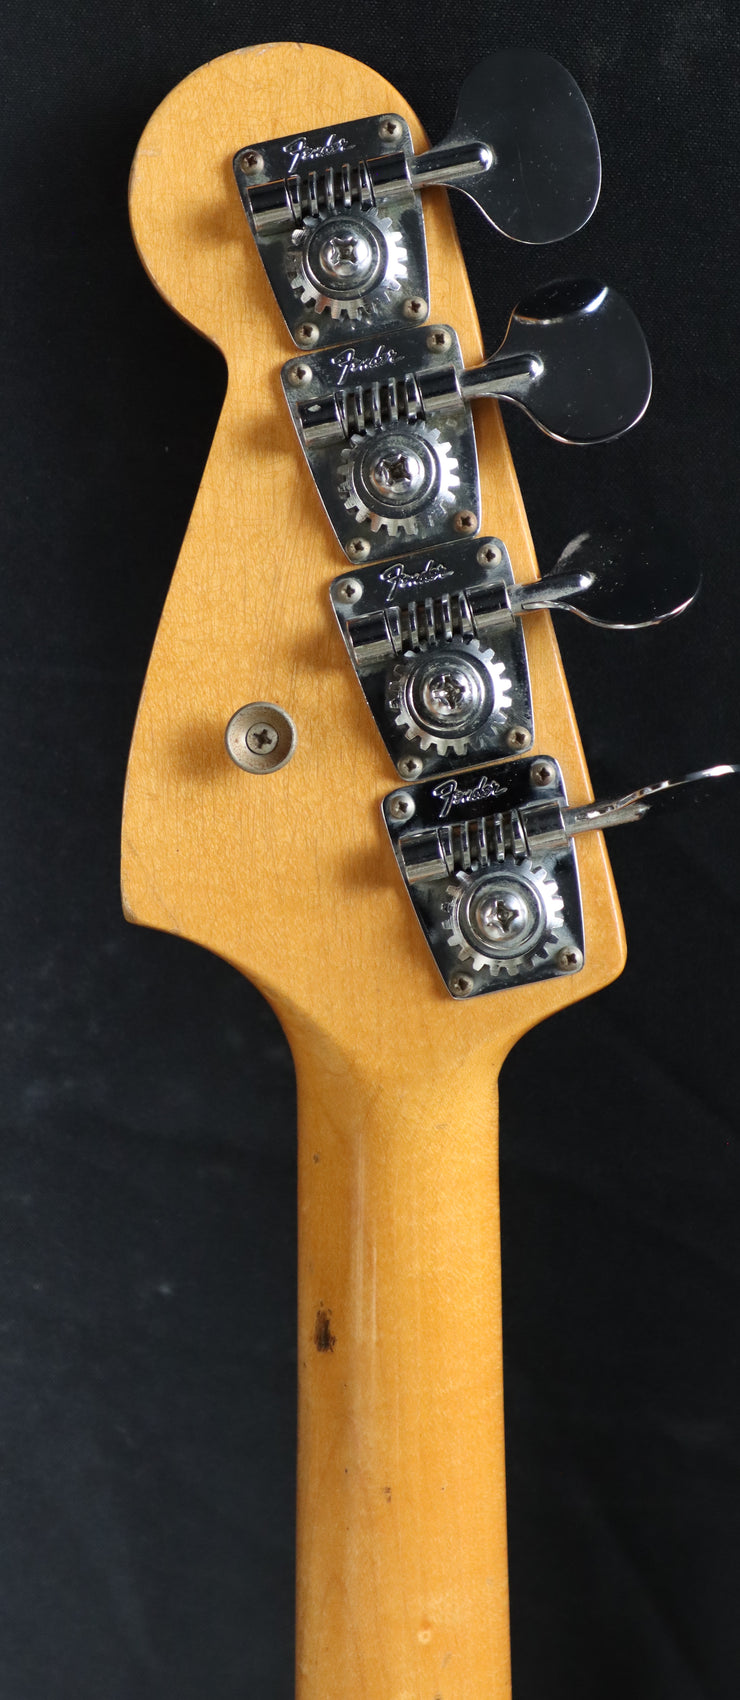 1968 Fender Mustang Bass